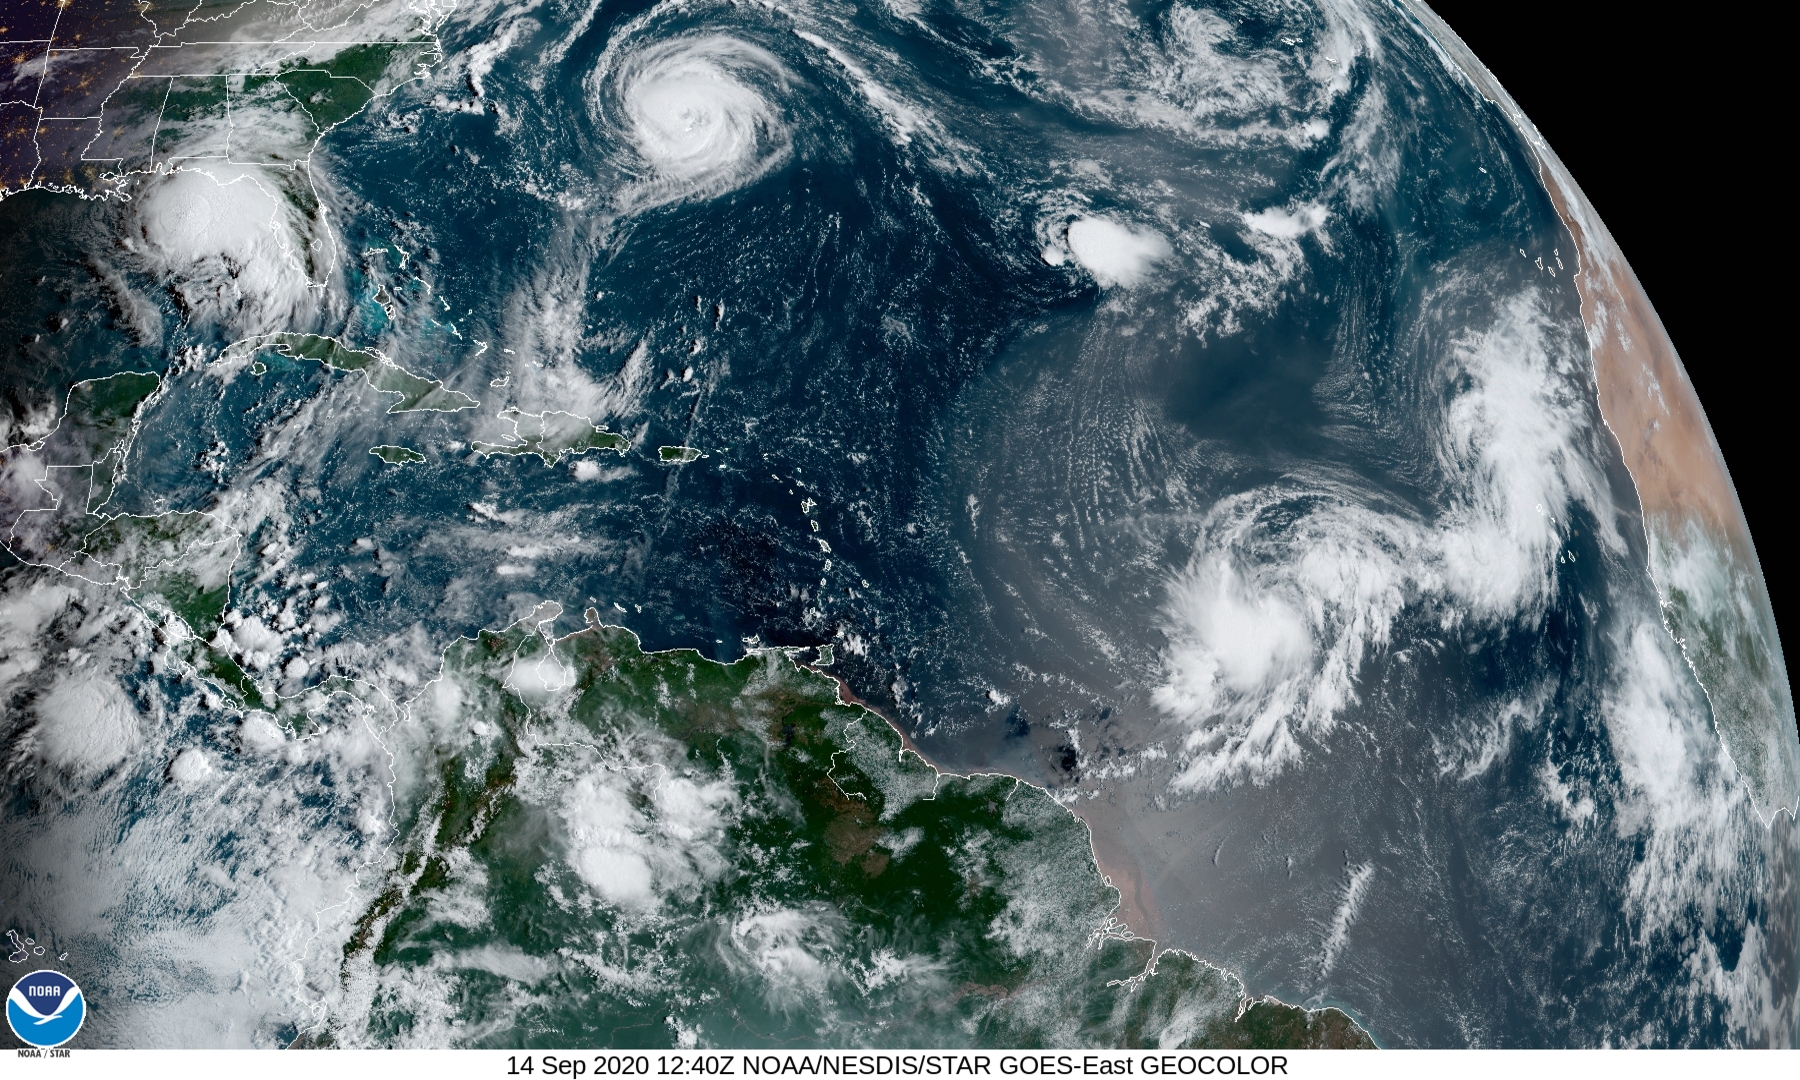 https://miamidiario.com/con-teddy-ya-son-cuatro-las-tormentas-tropicales-activas-en-el-atlantico/